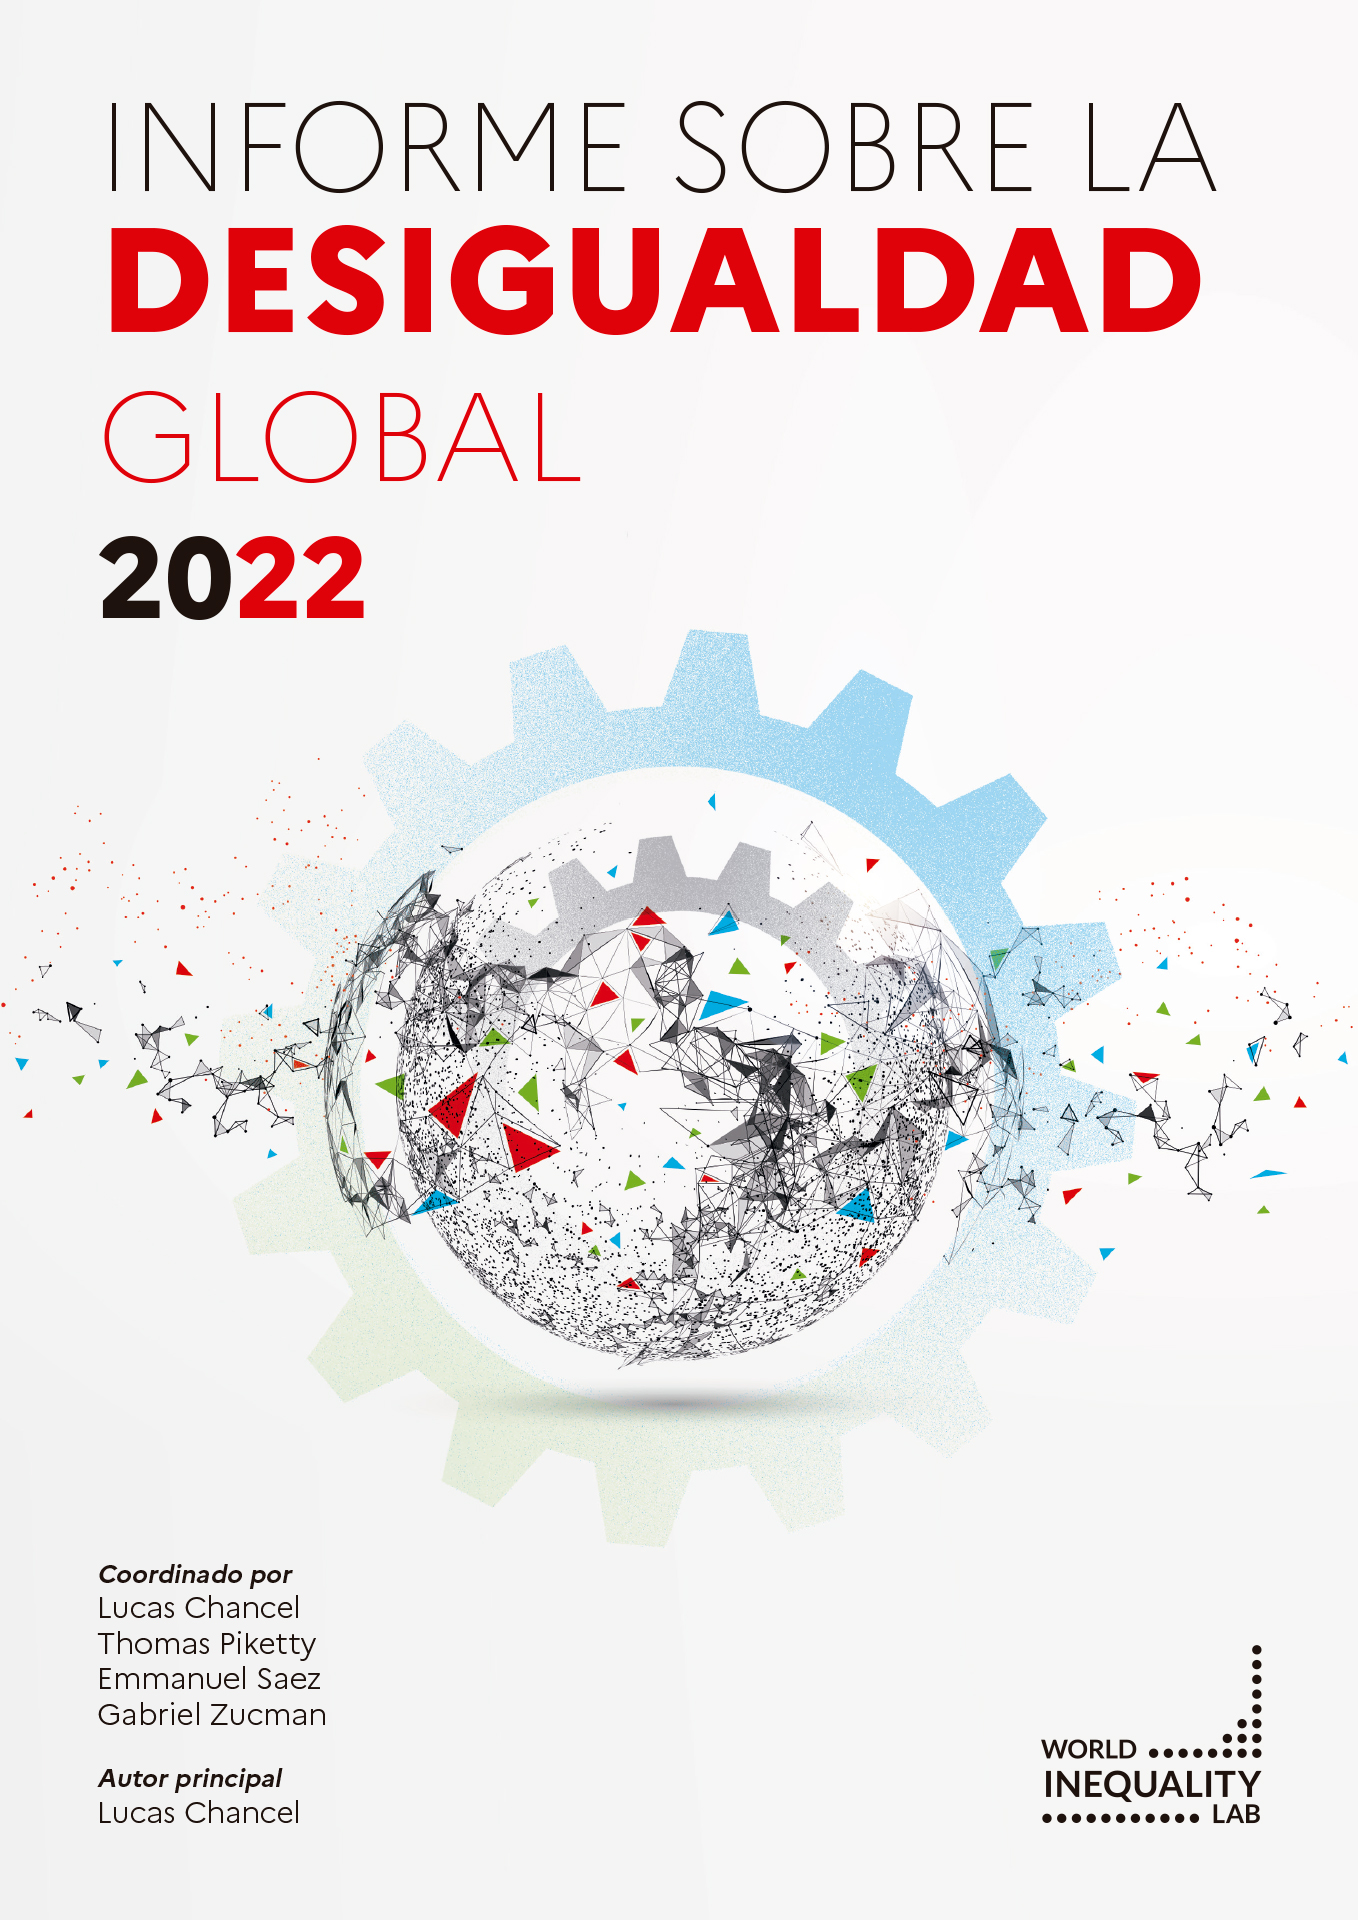 Informe sobre la desigualdad global 2022